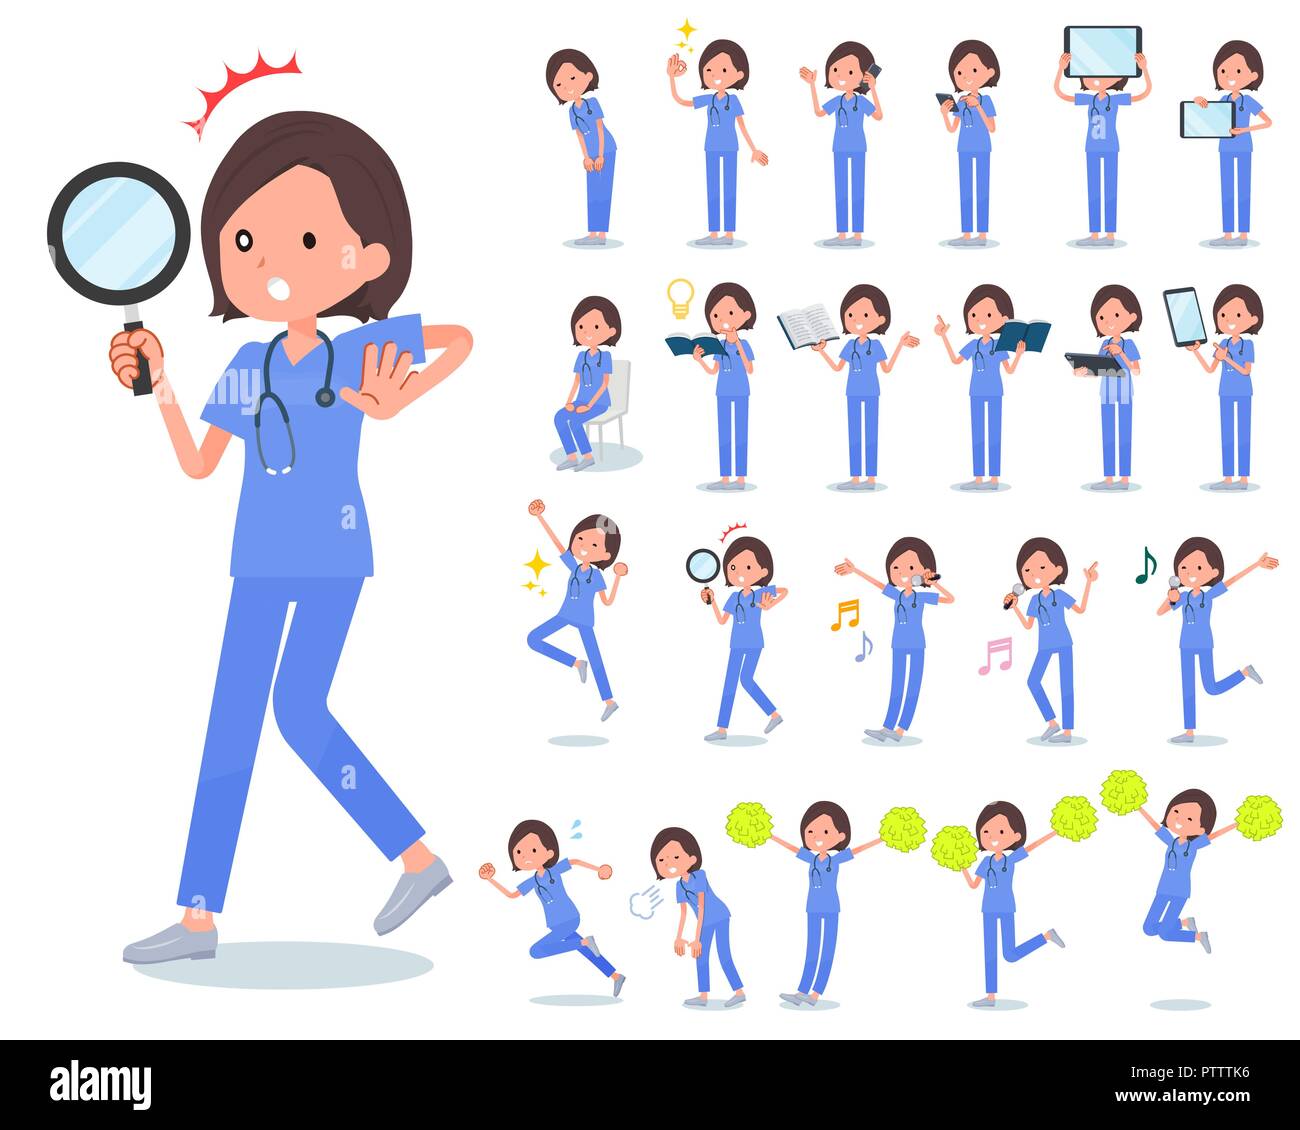 Eine Reihe von chirurgischen Arzt Frauen mit digitalen Geräten wie Smartphones. Es gibt Handlungen, Gefühle auszudrücken. Es ist Vektor Kunst so ist es leicht zu bearbeiten. Stock Vektor